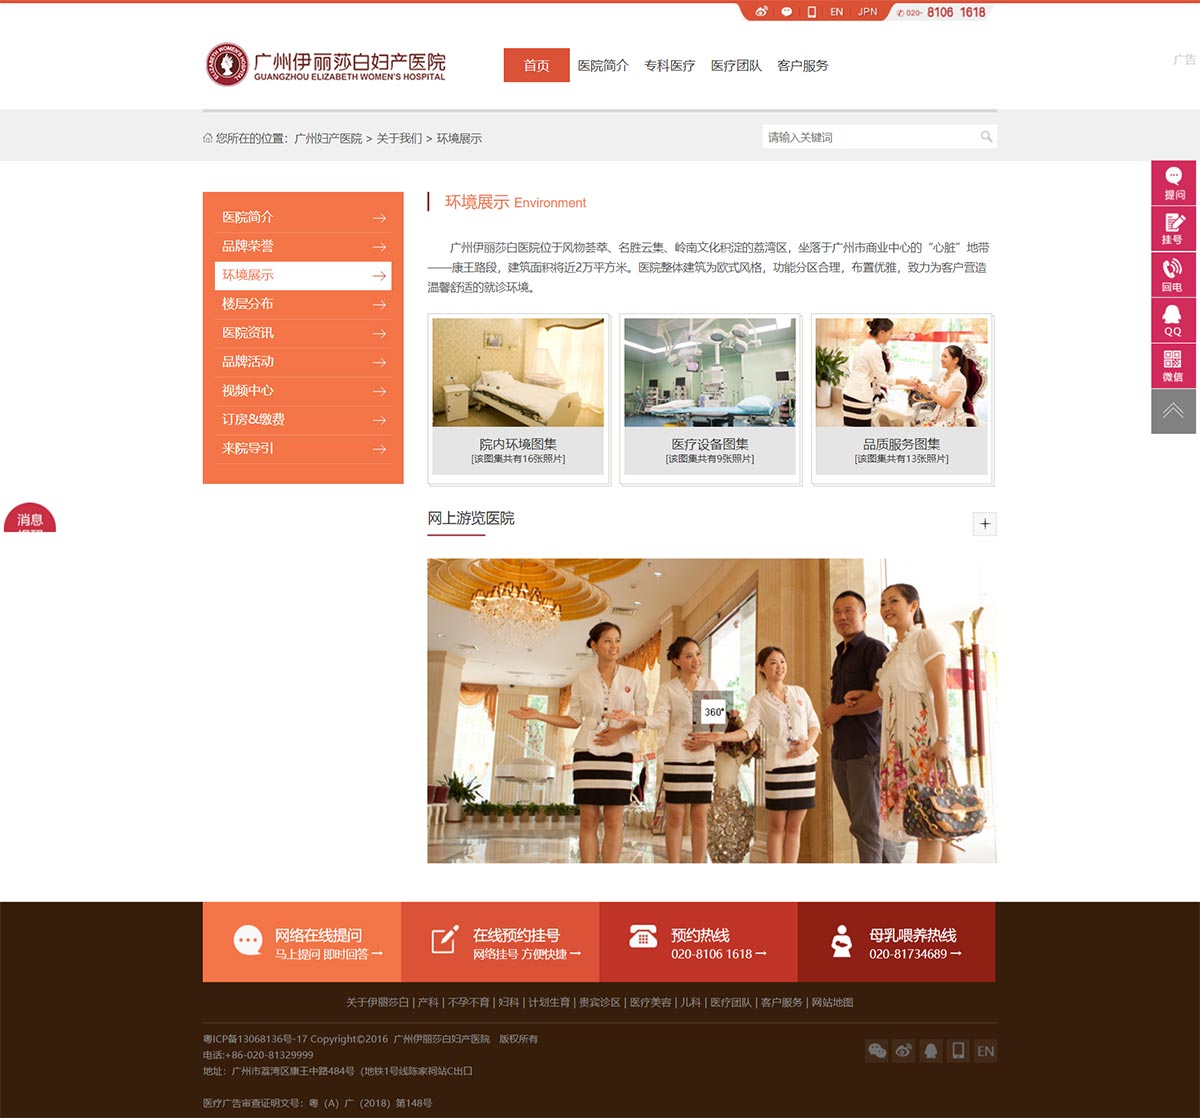 广州伊丽莎白妇产医院-(中国)官方网站-3.jpg